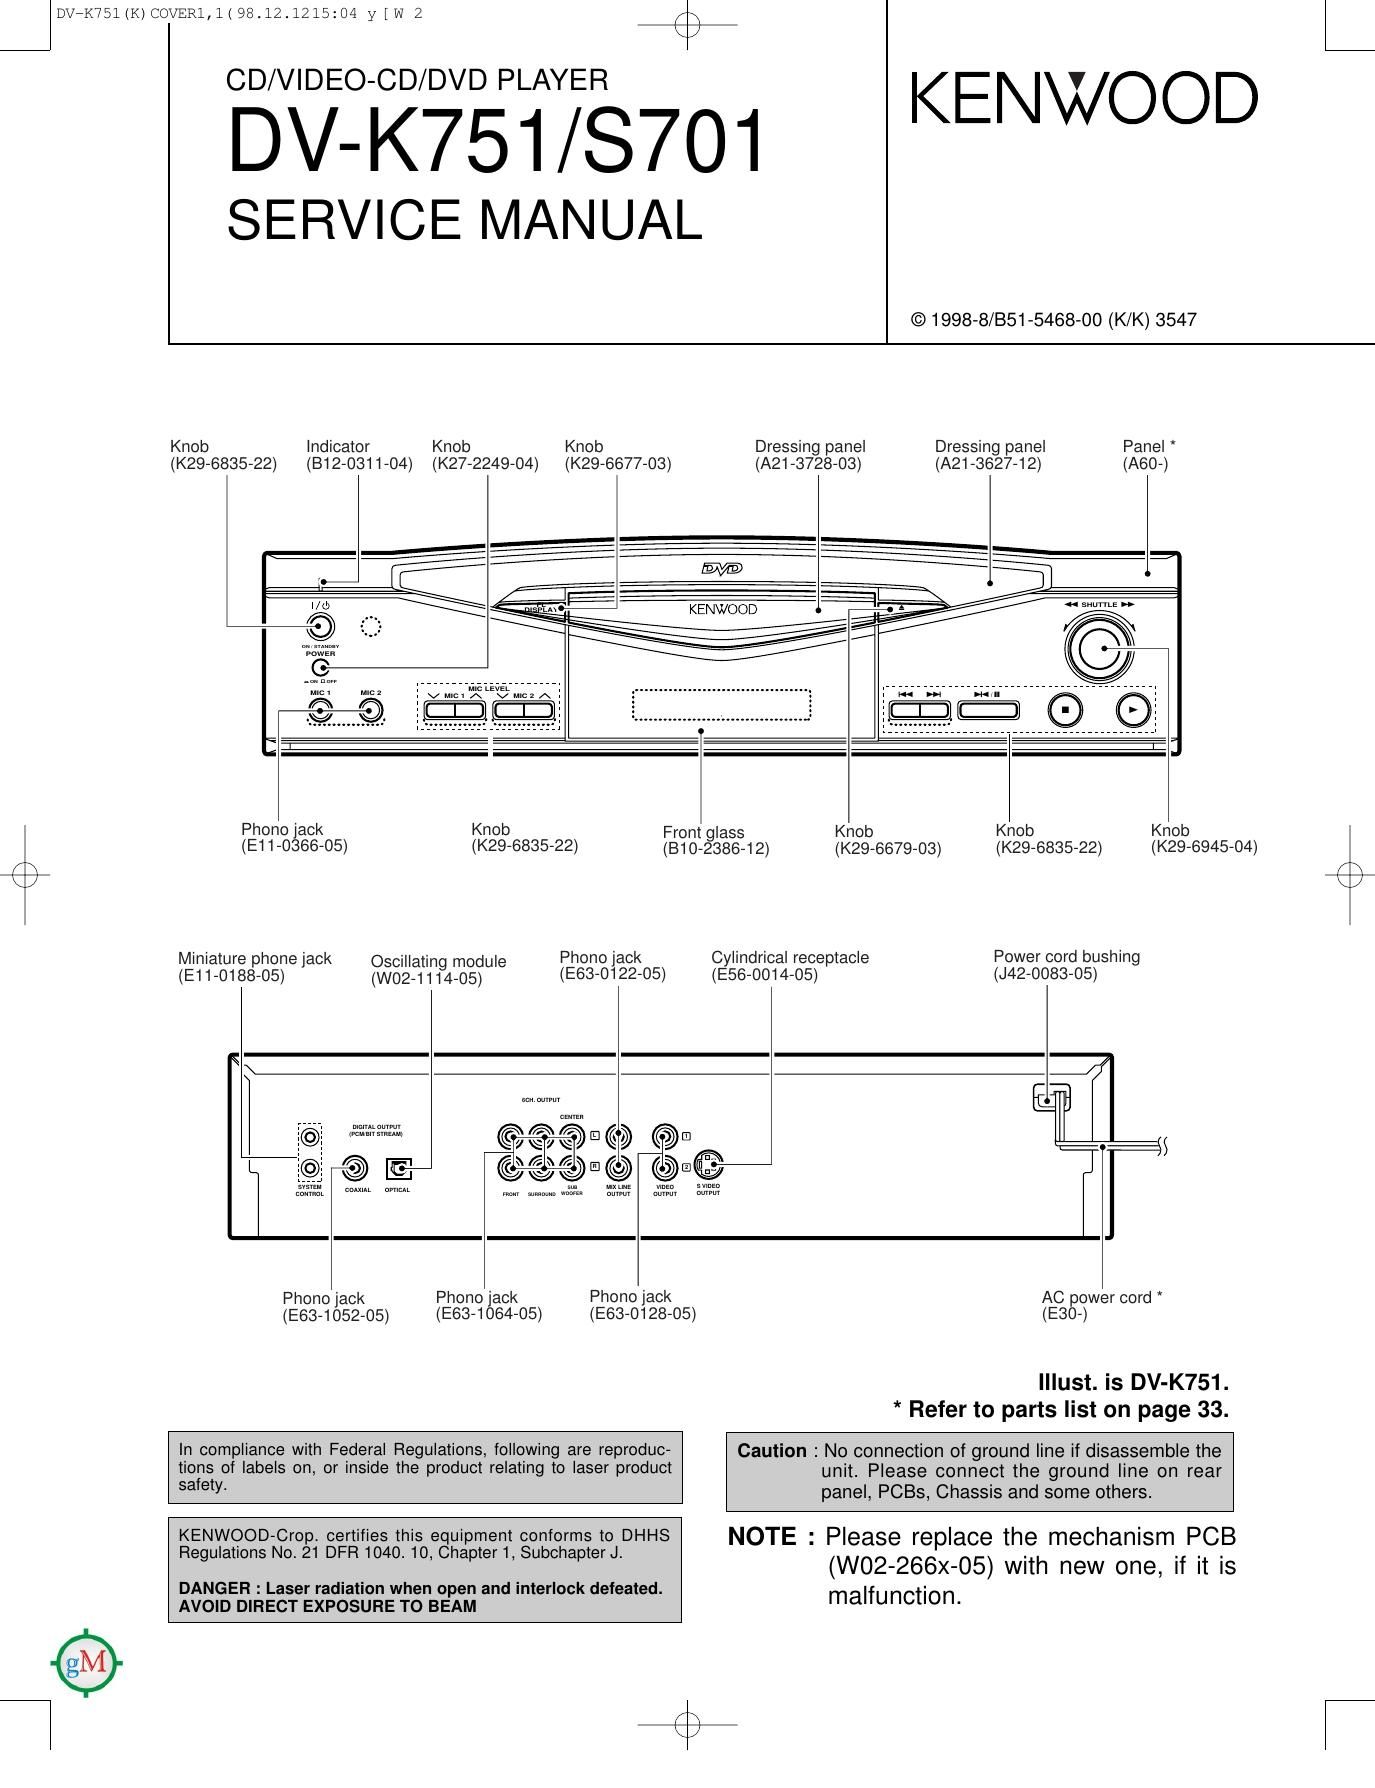 Kenwood DVK 751 Service Manual